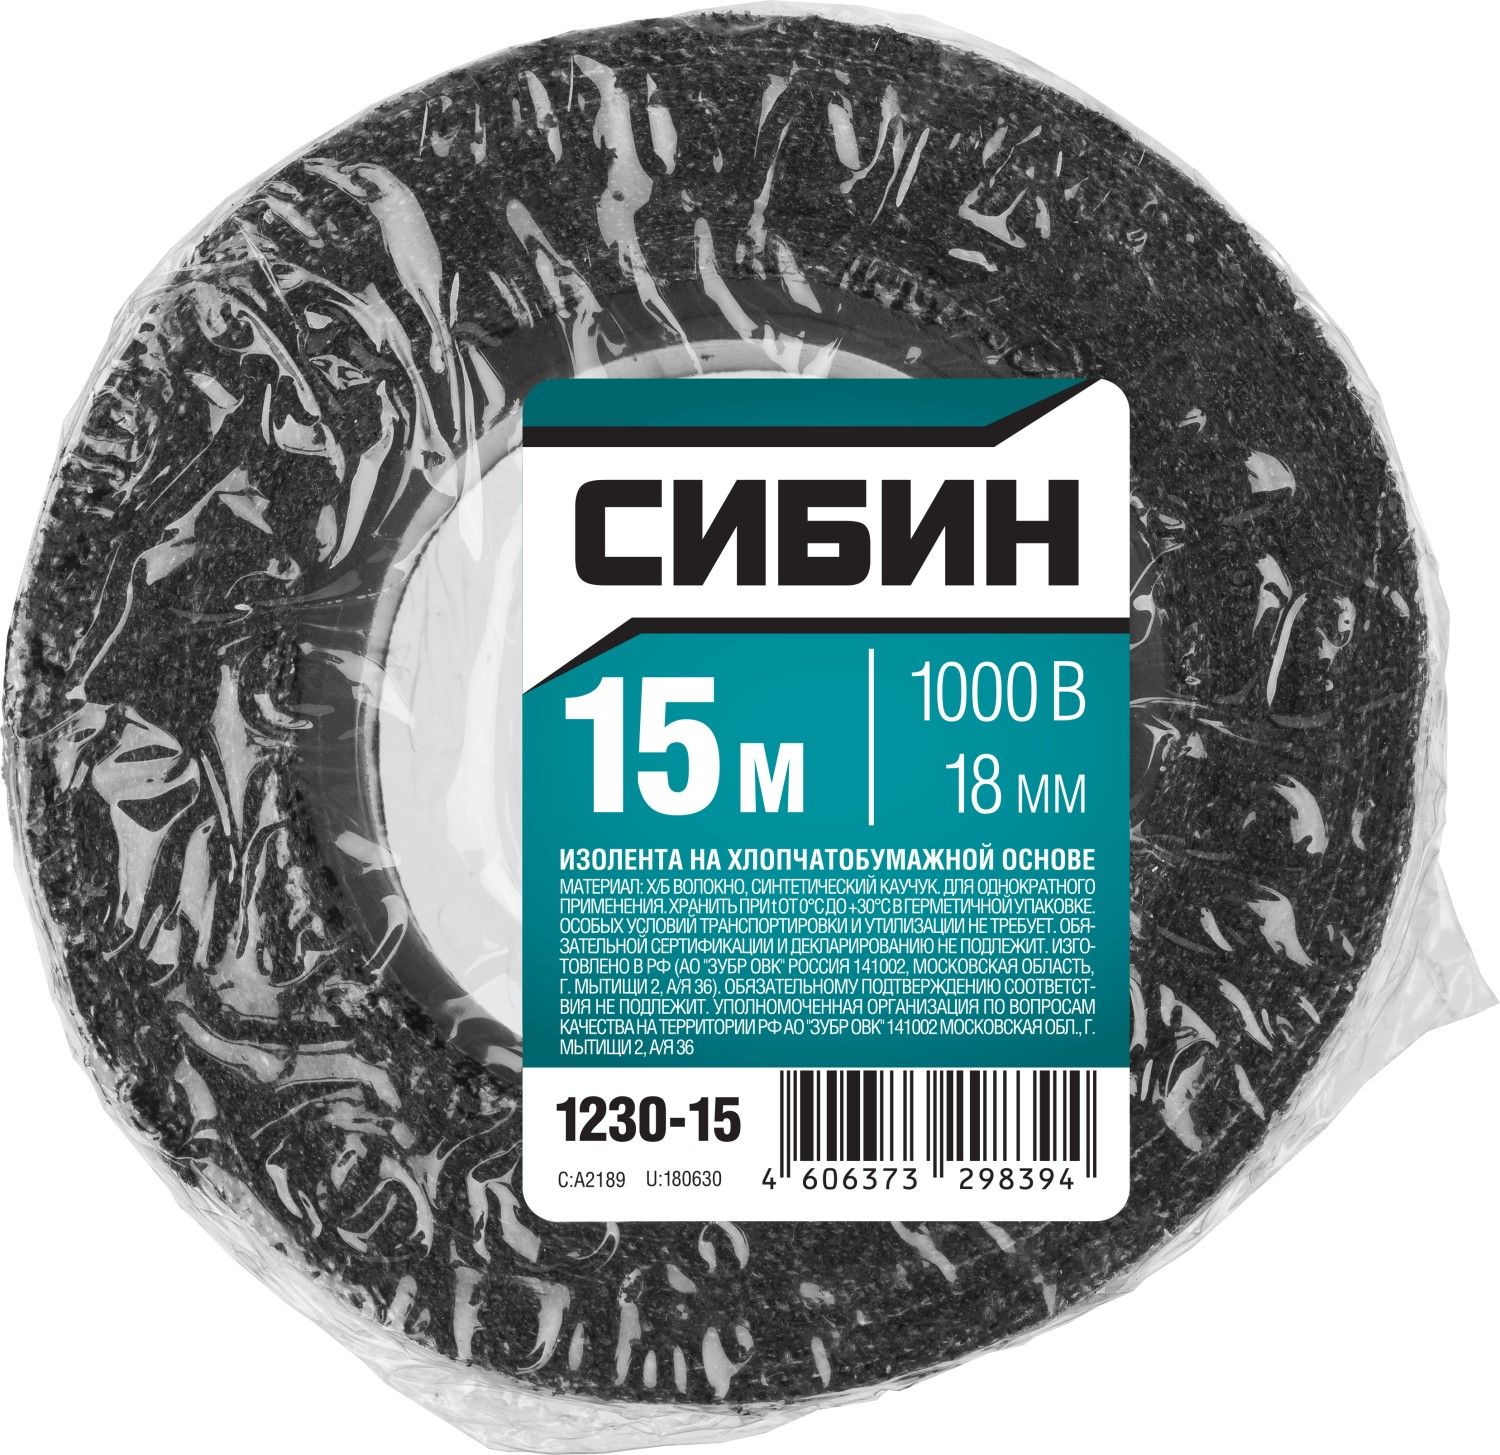 Изолента Сибин 15м Х/Б, ширина 18 мм, 1000 В, черная